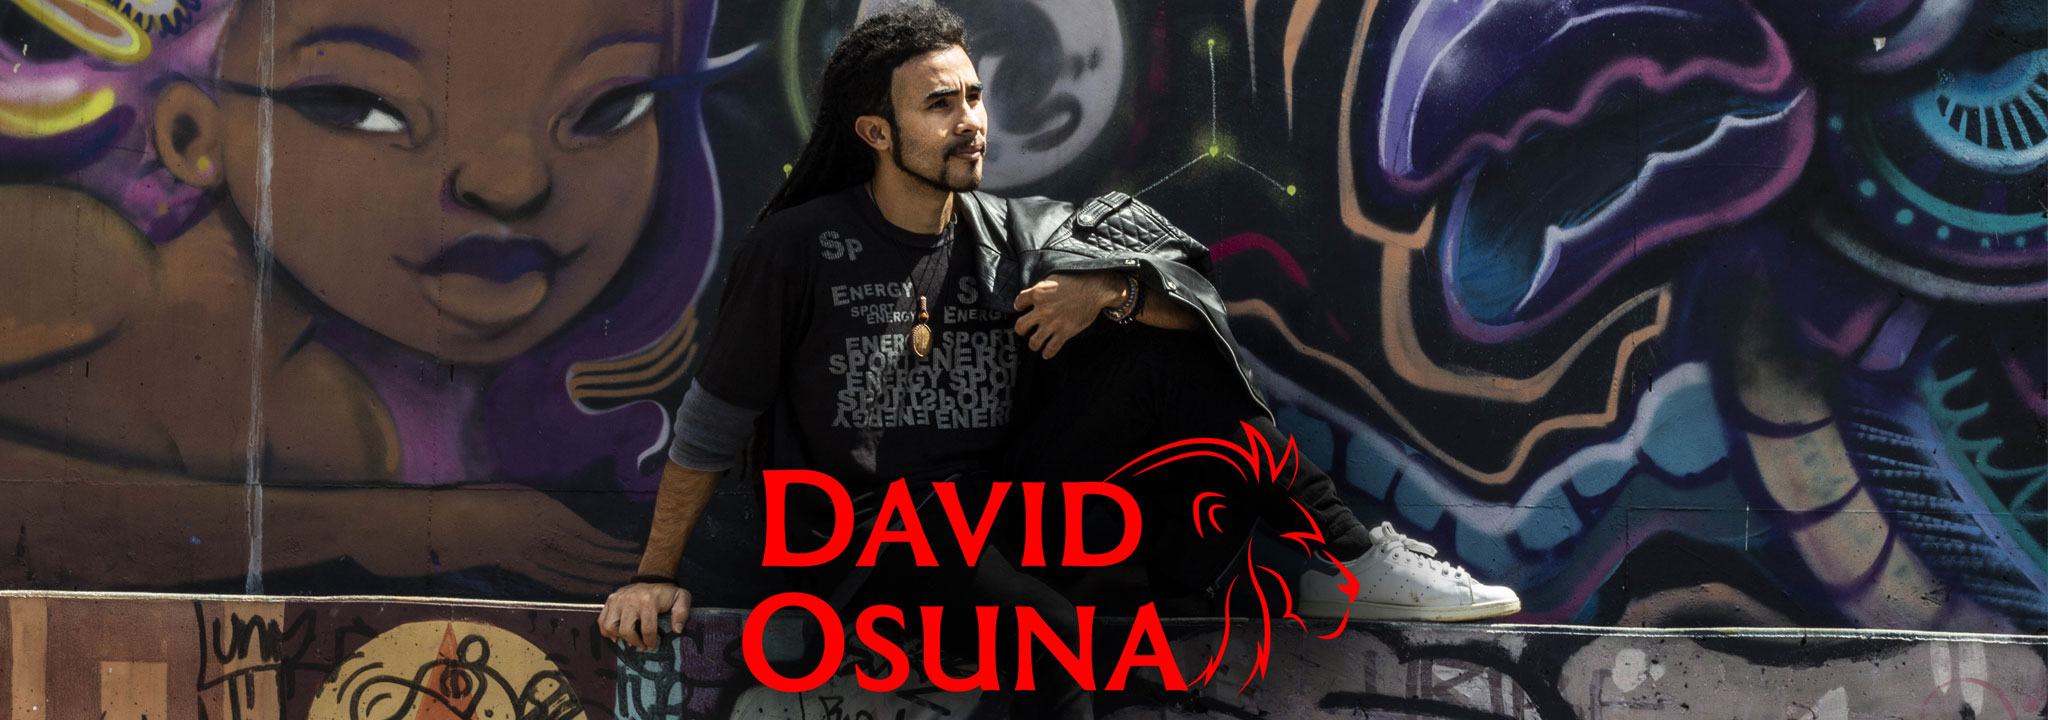 David Osuna's cover